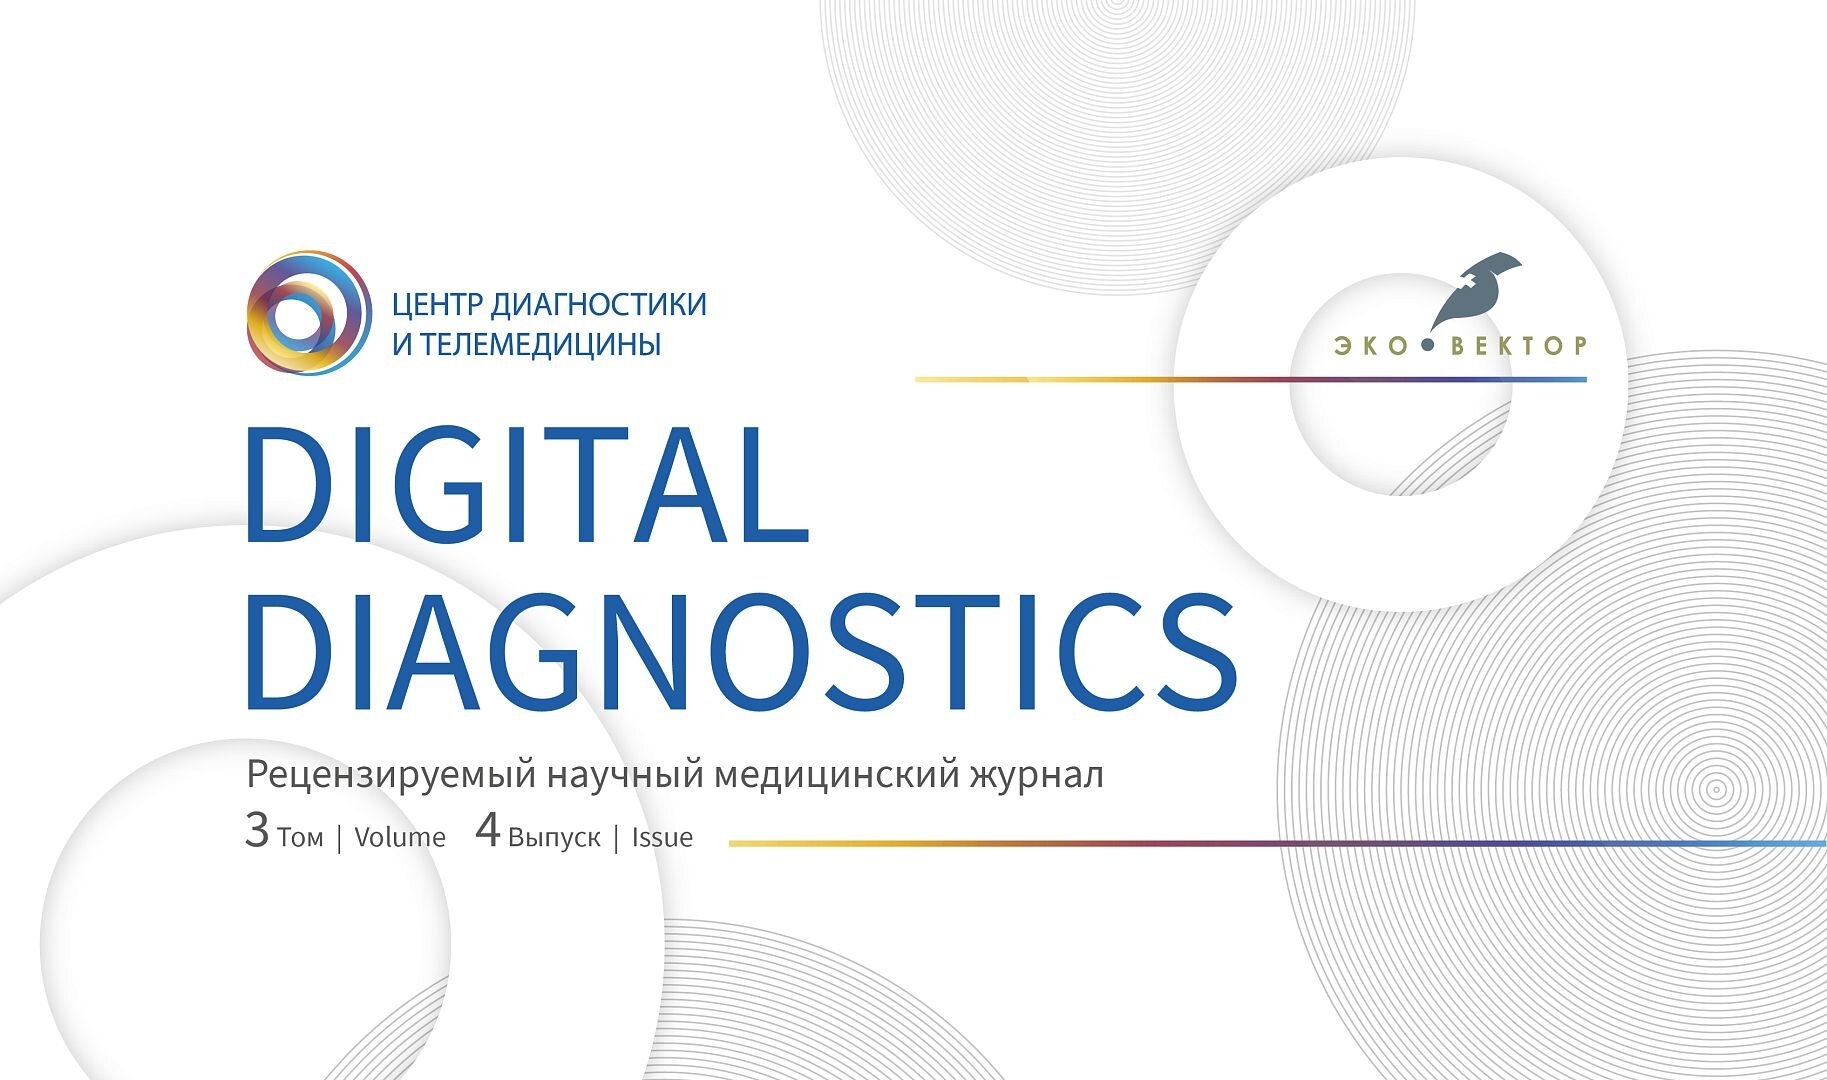 Важные исследования и необычные клинические случаи в новом выпуске журнала «Digital Diagnostics»